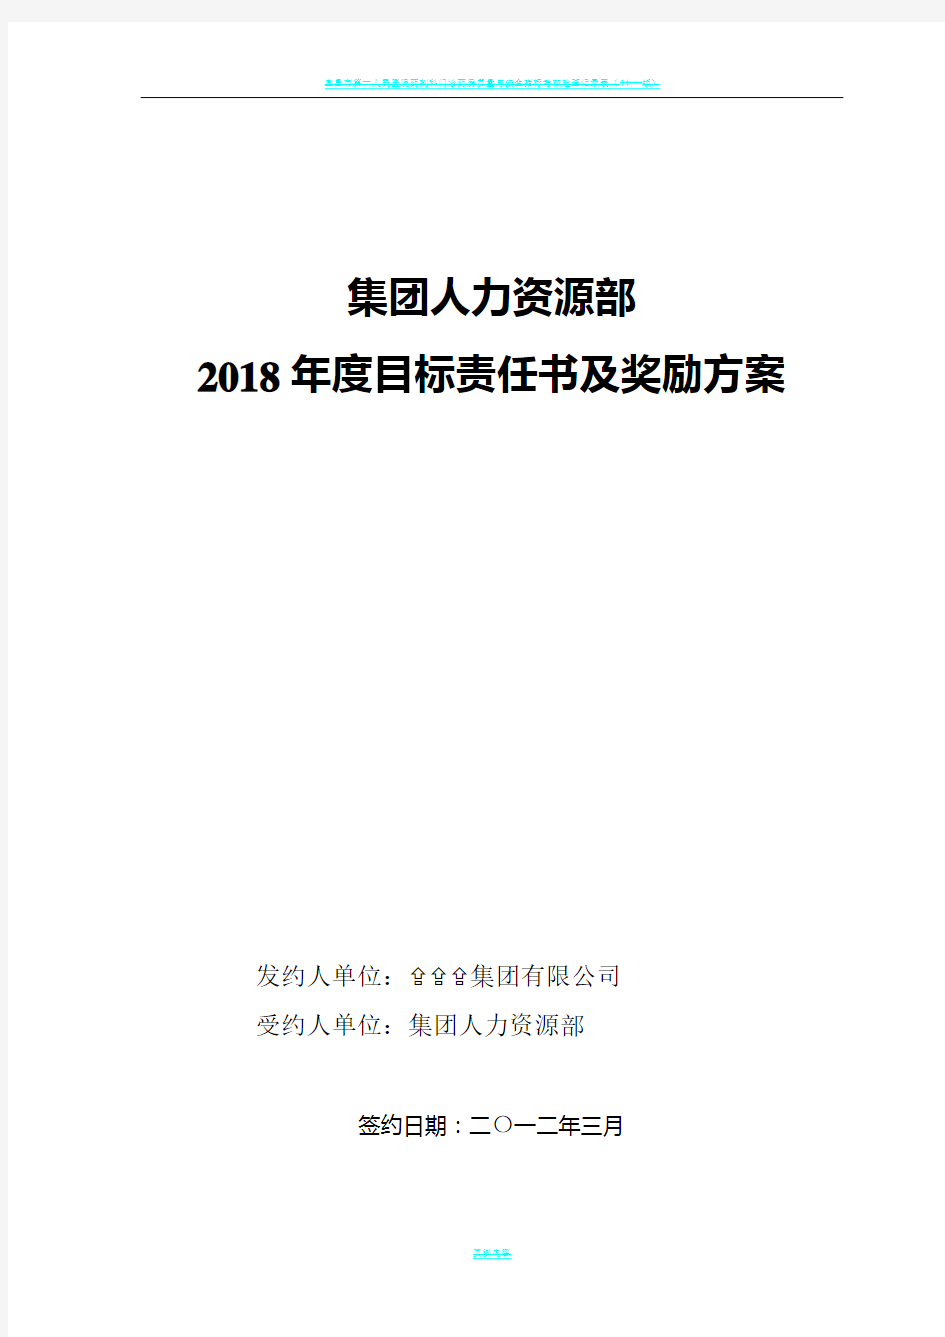 2013集团人力资源部目标责任书(绩效考核方案)